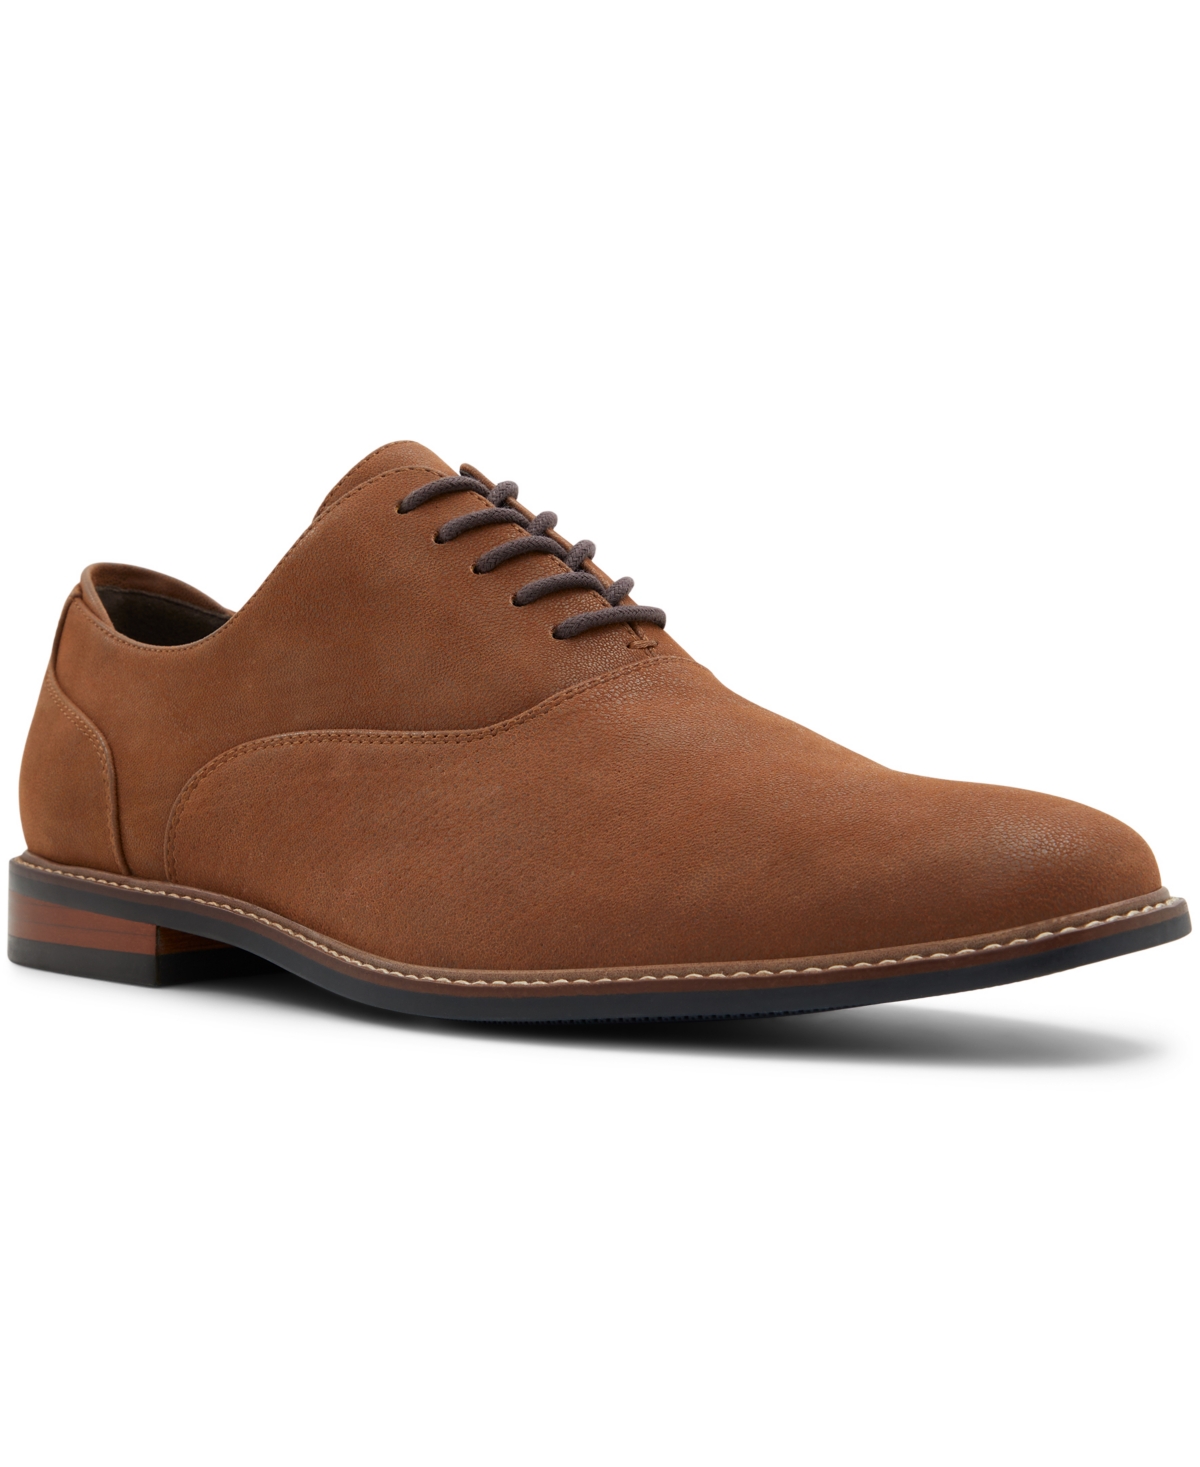 Men's Fresien Oxford Shoes - Tan